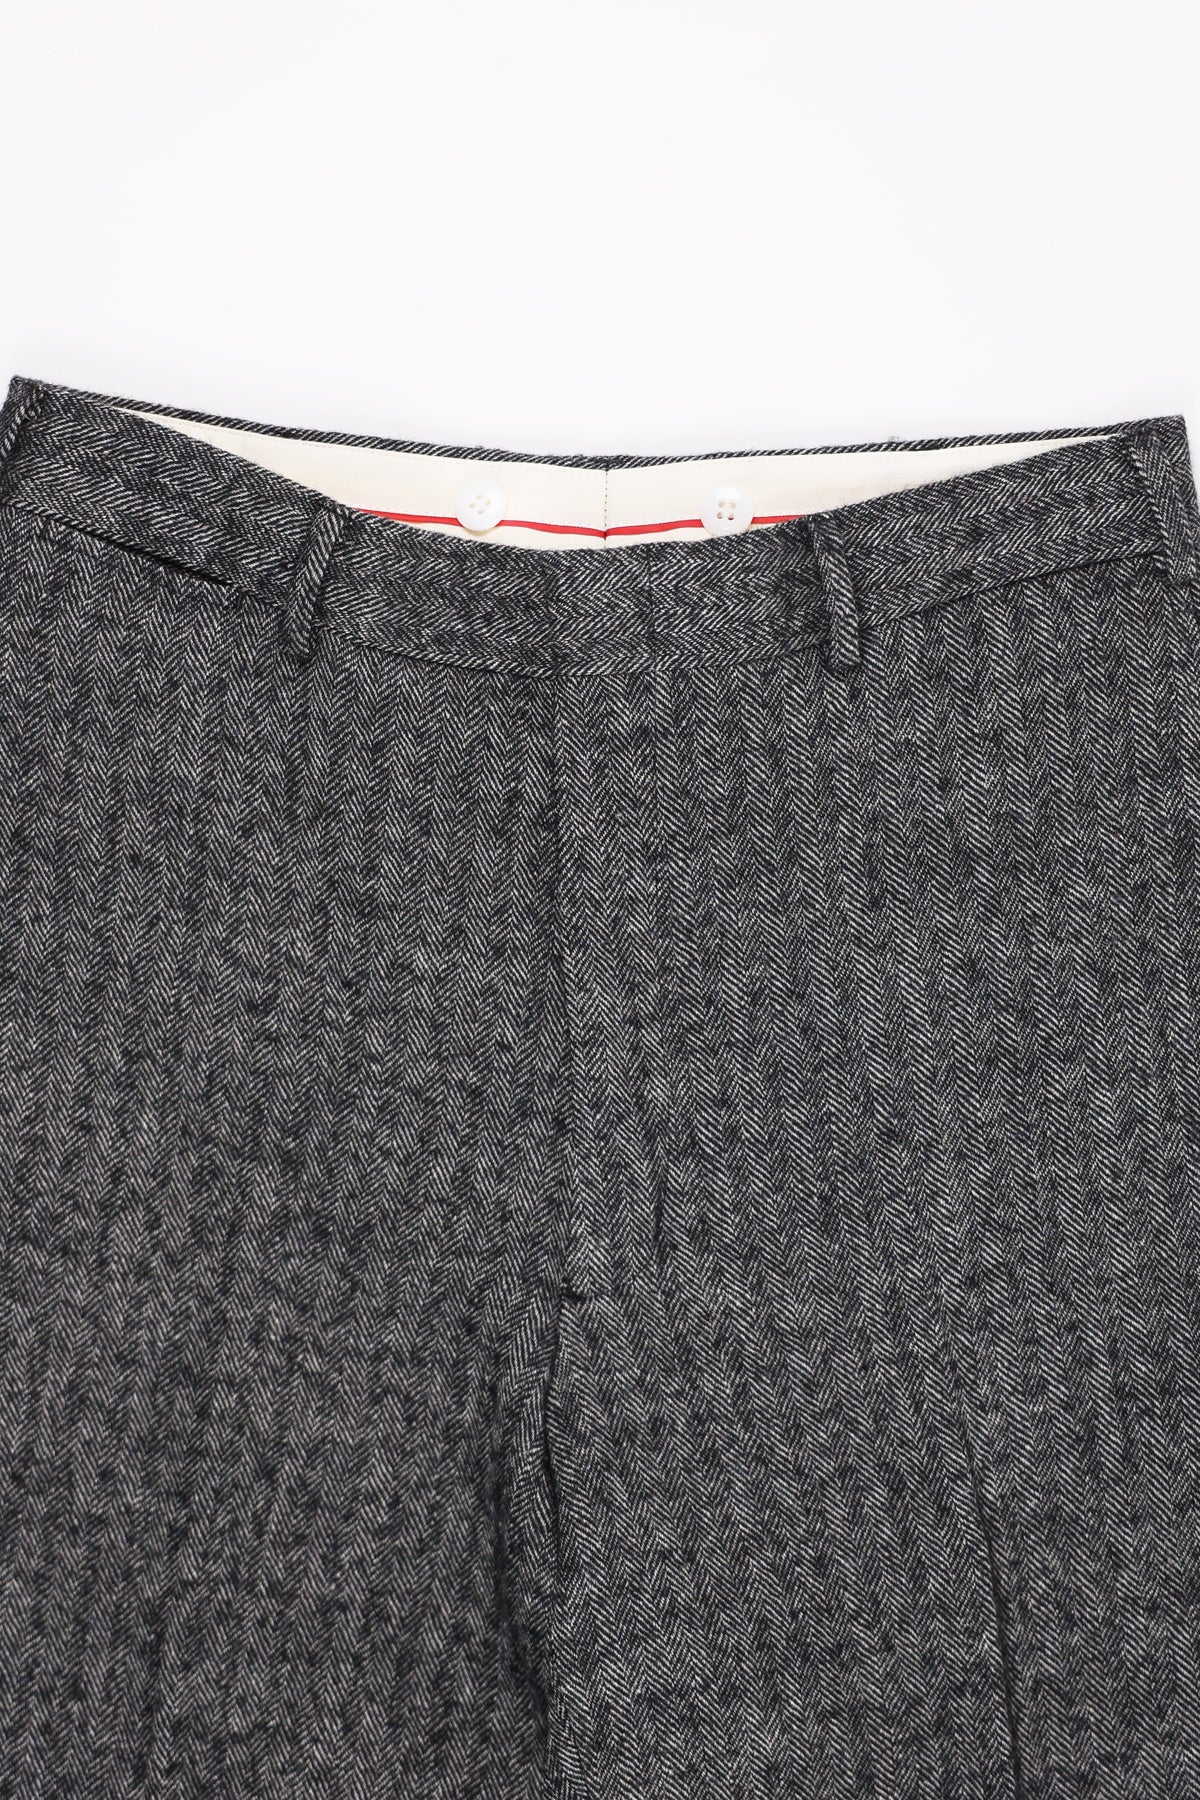 Piped Stem Pants - Gray Herringbone Tweed